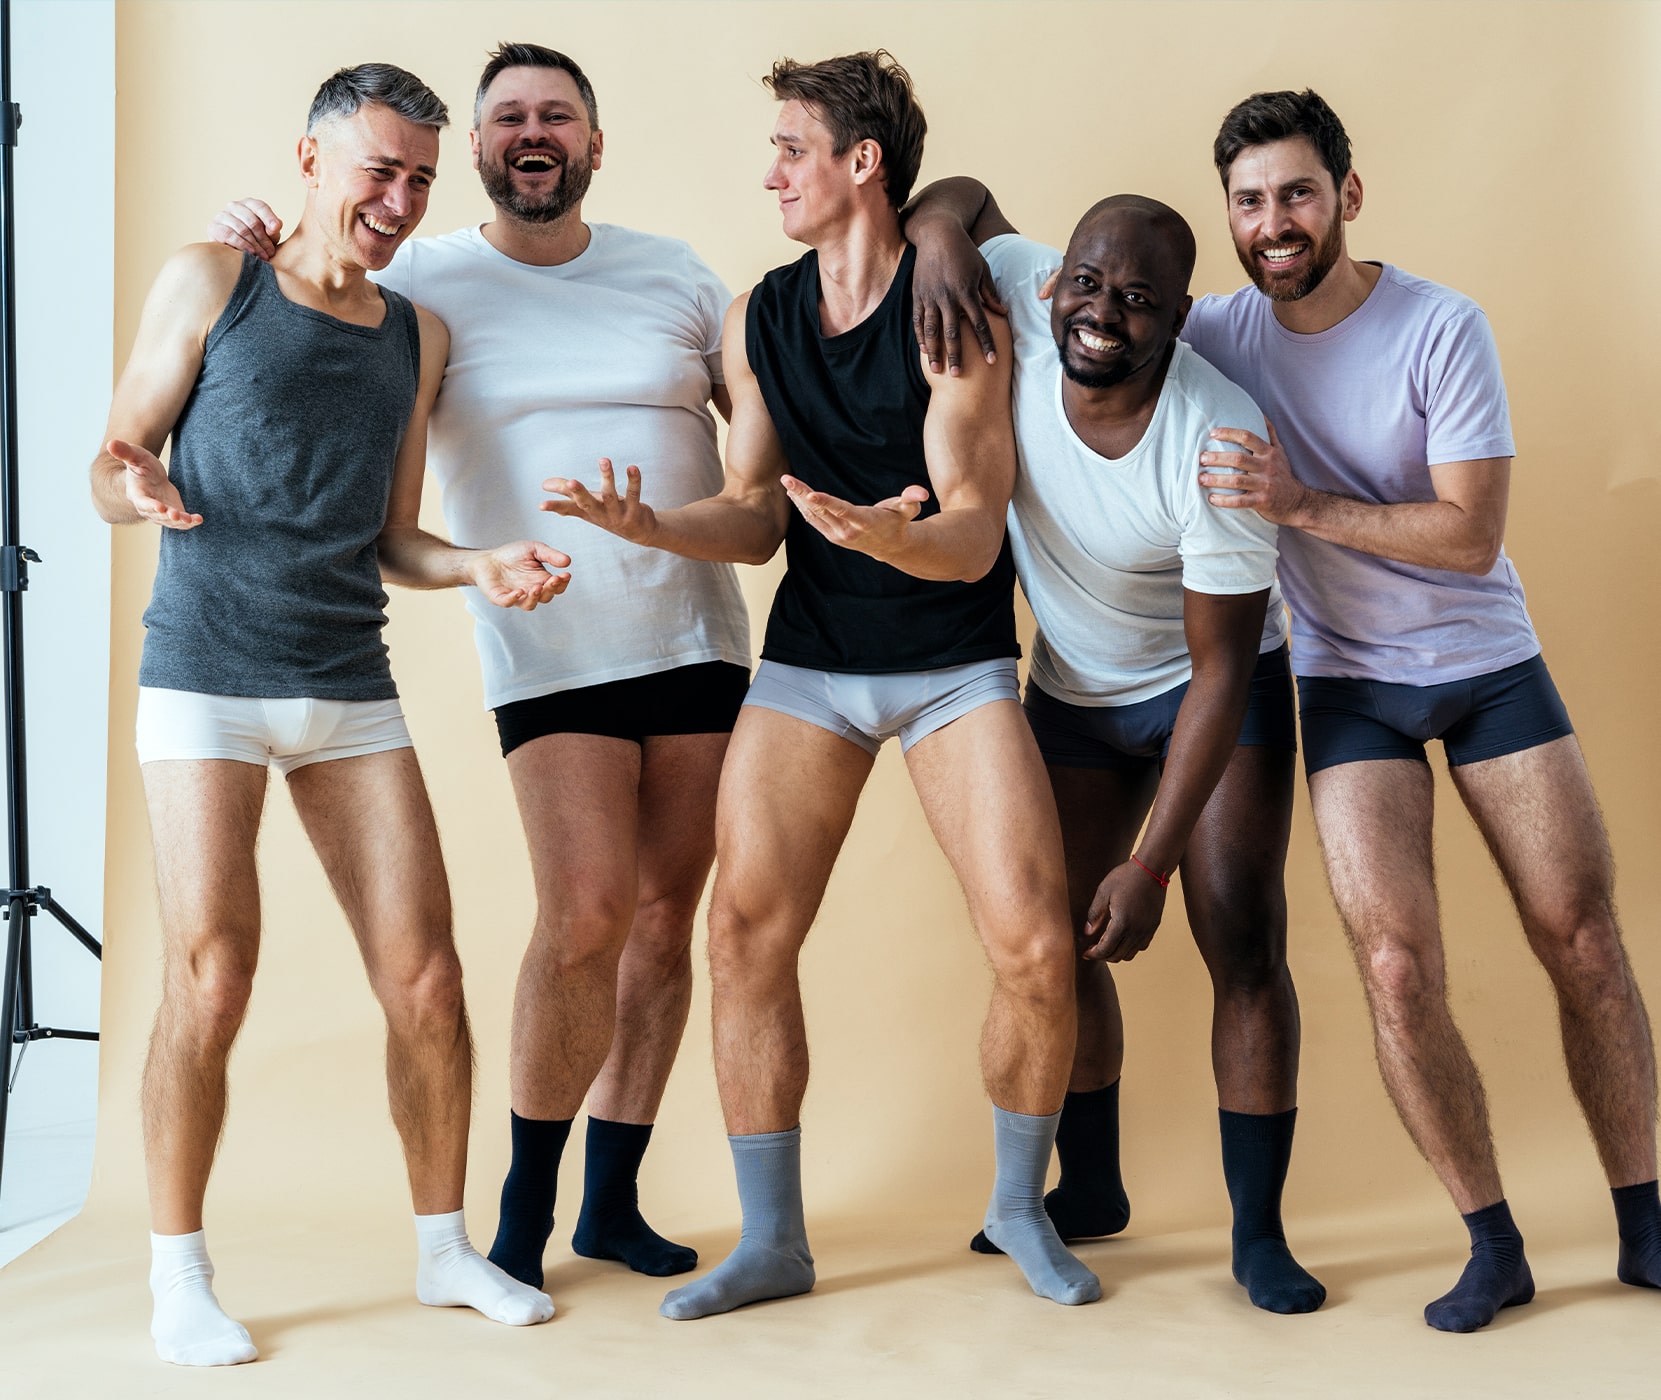 Group of men modeling underwear